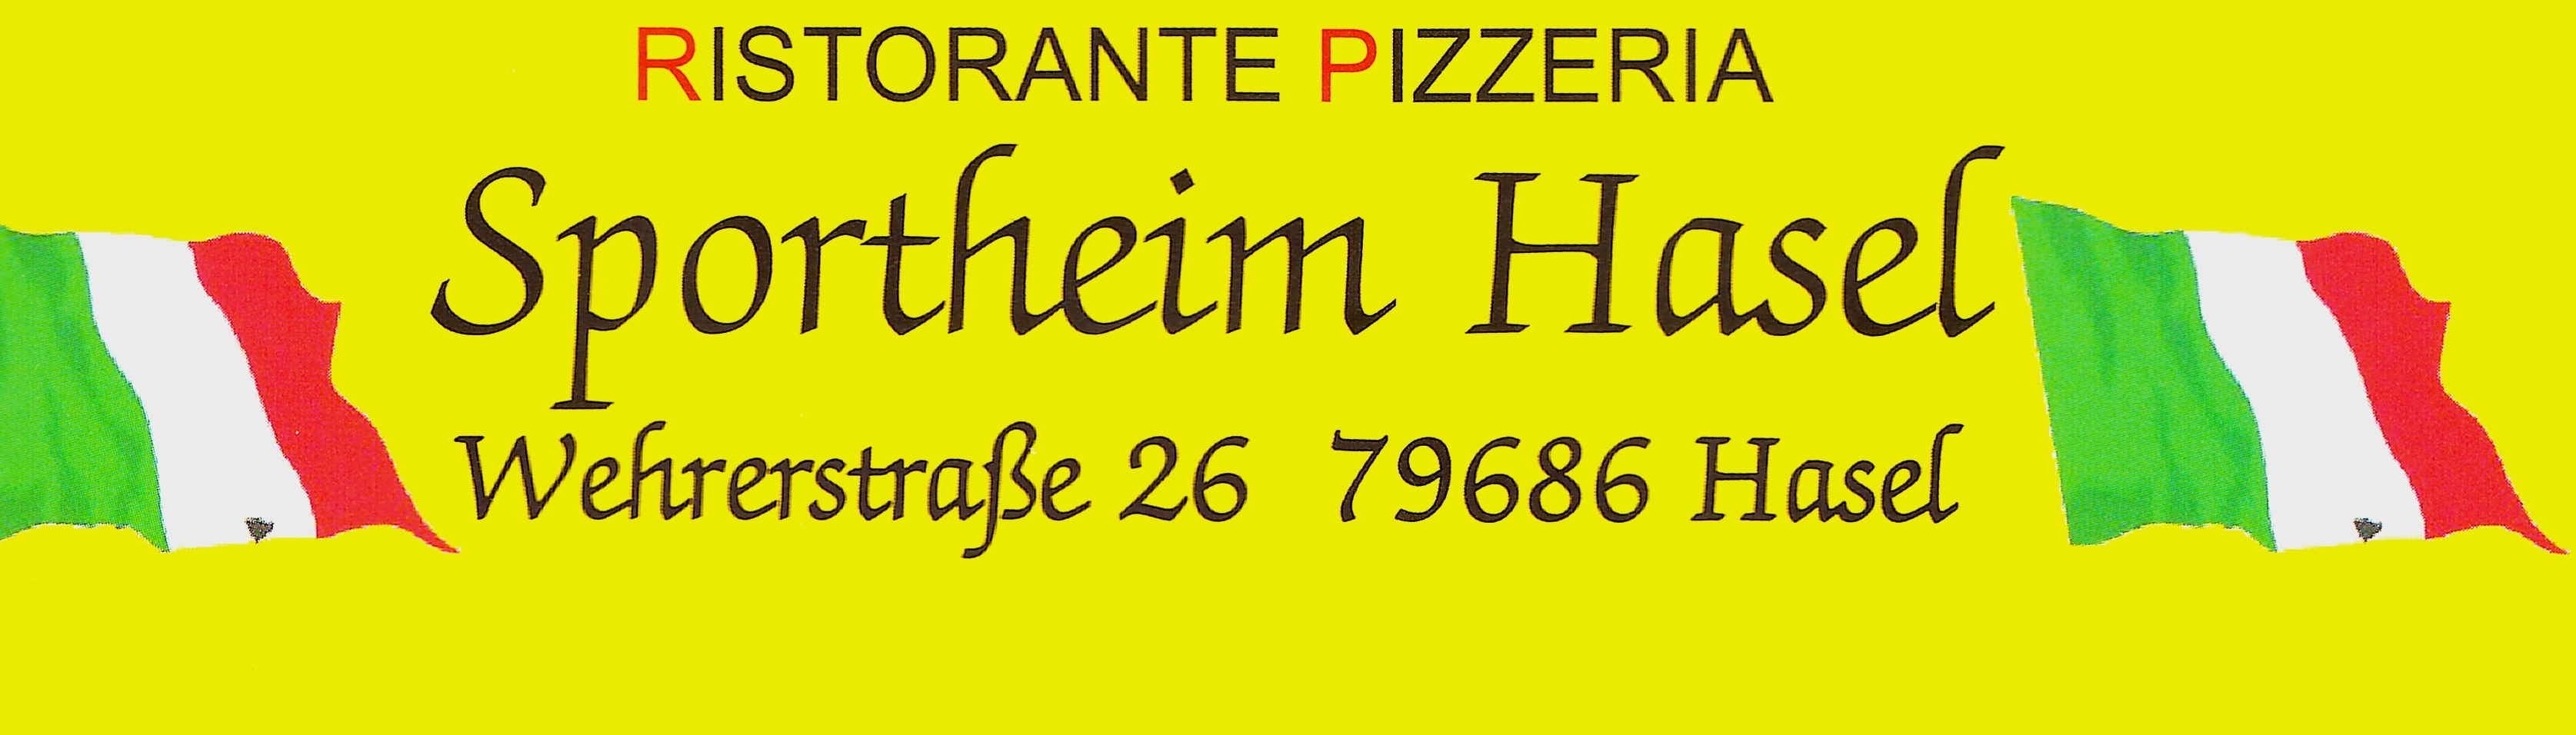 Kopfzeile Pizzeria 23